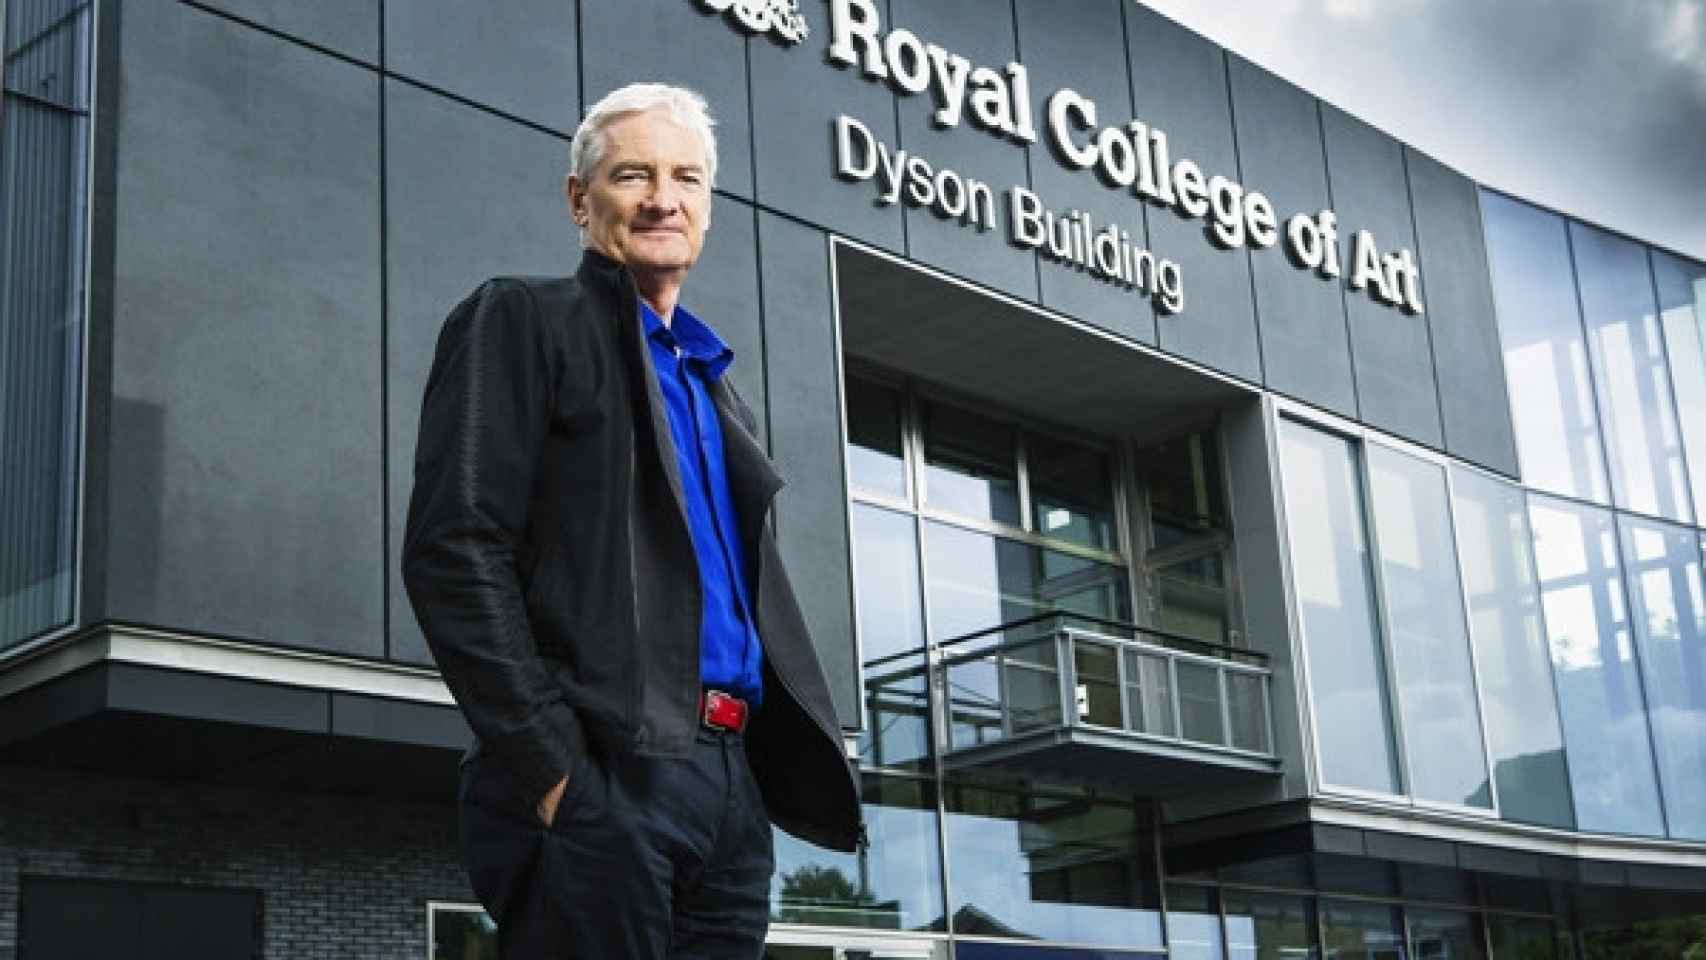 Dyson y el edificio del Royal College of Art que lleva su nombre